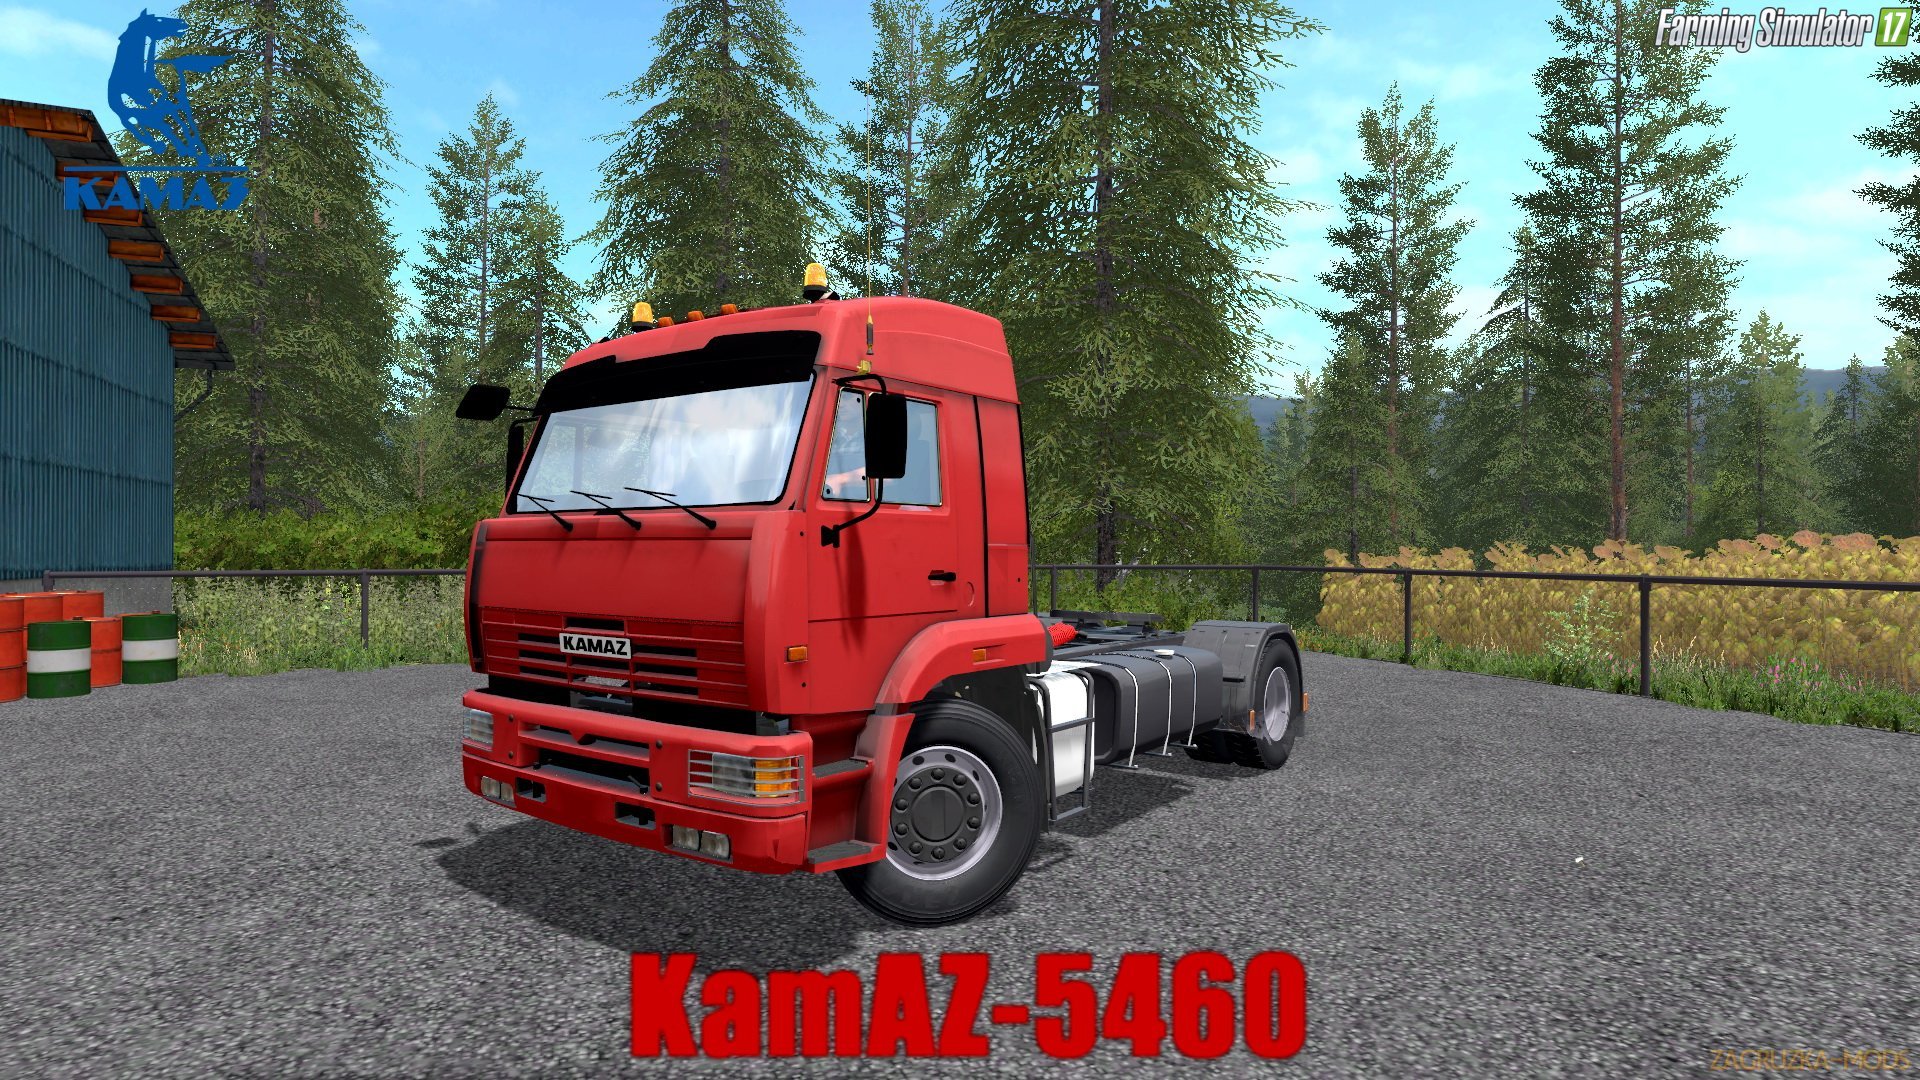 KamAZ-5460 v1.1 for FS 17